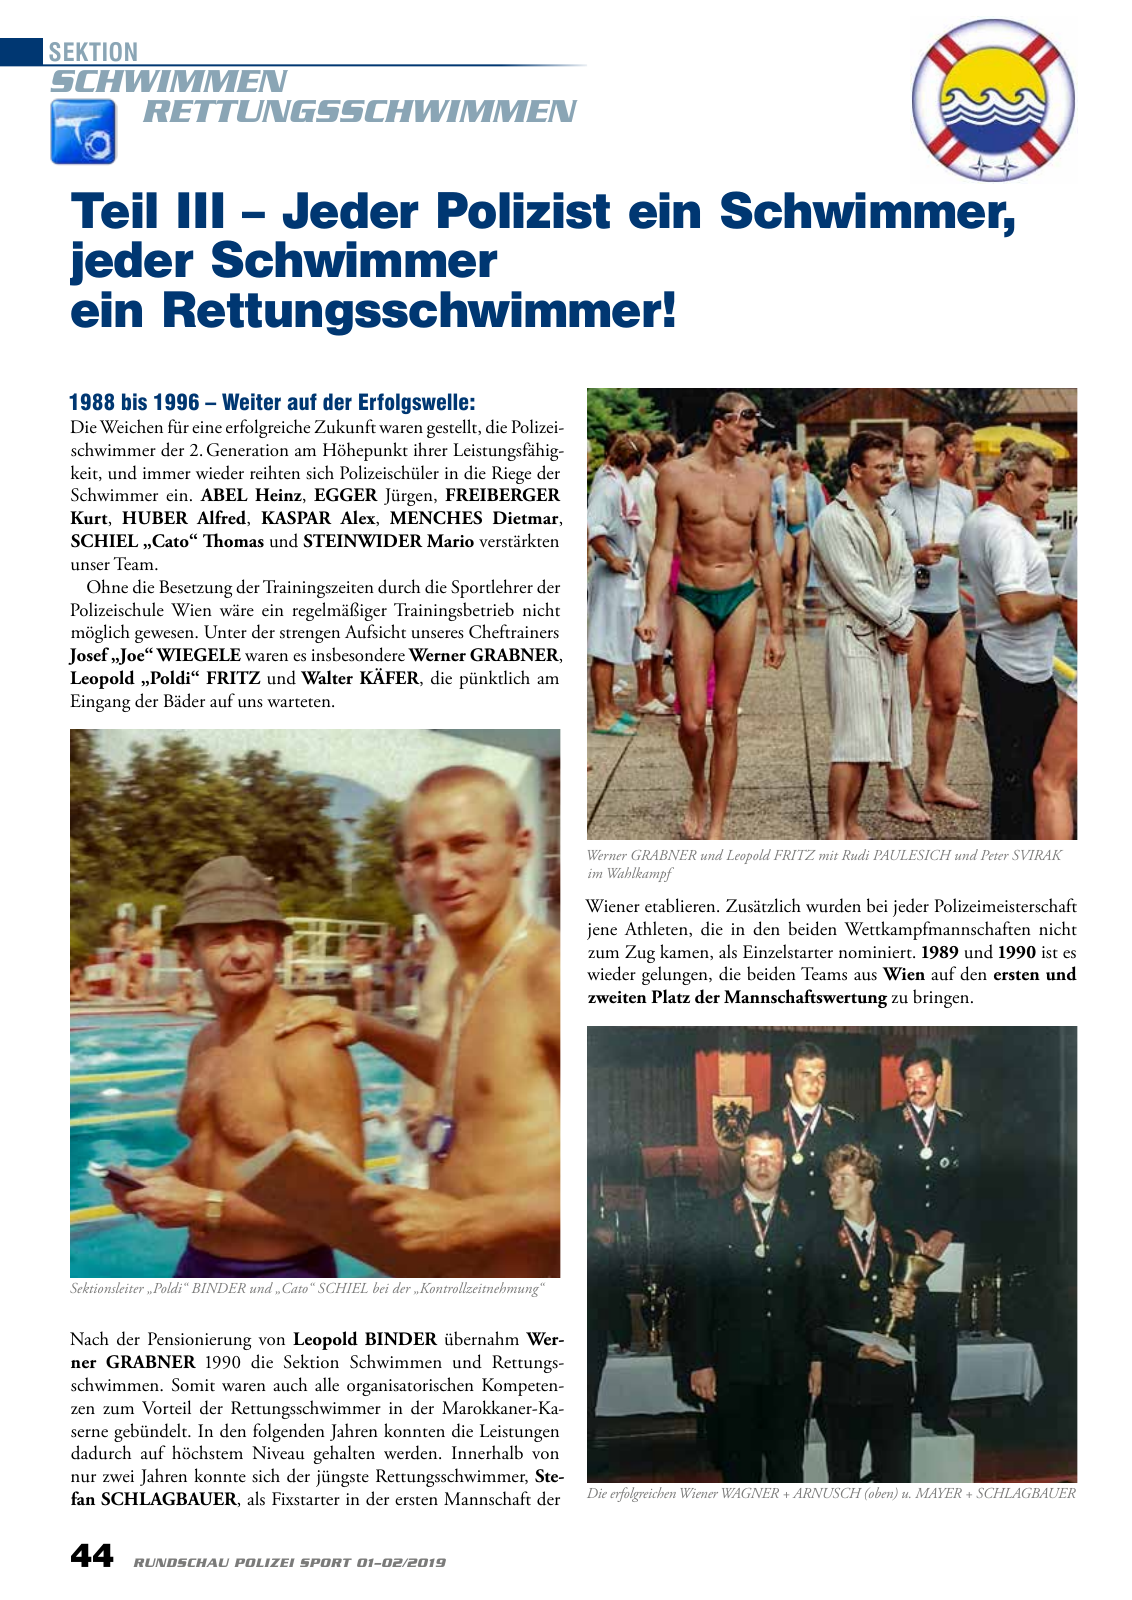 Vorschau Rundschau Polizei Sport 01-02/2019 Seite 44